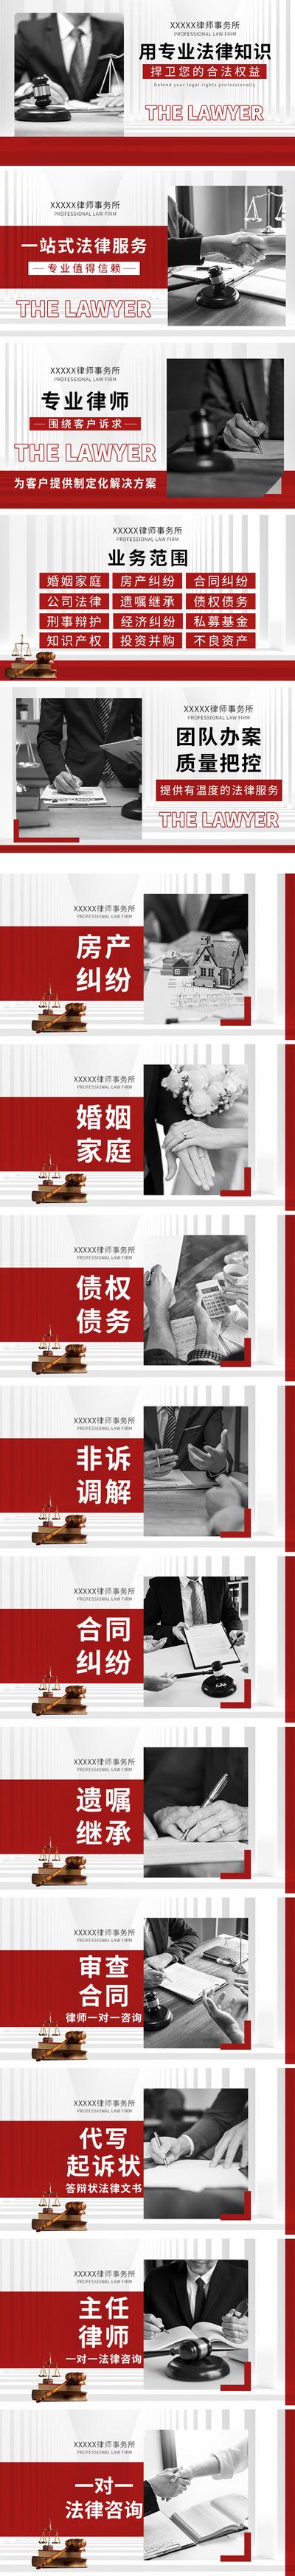 南门网 电商海报 淘宝海报 banner 律师 法律 律师事务所 系列 团购